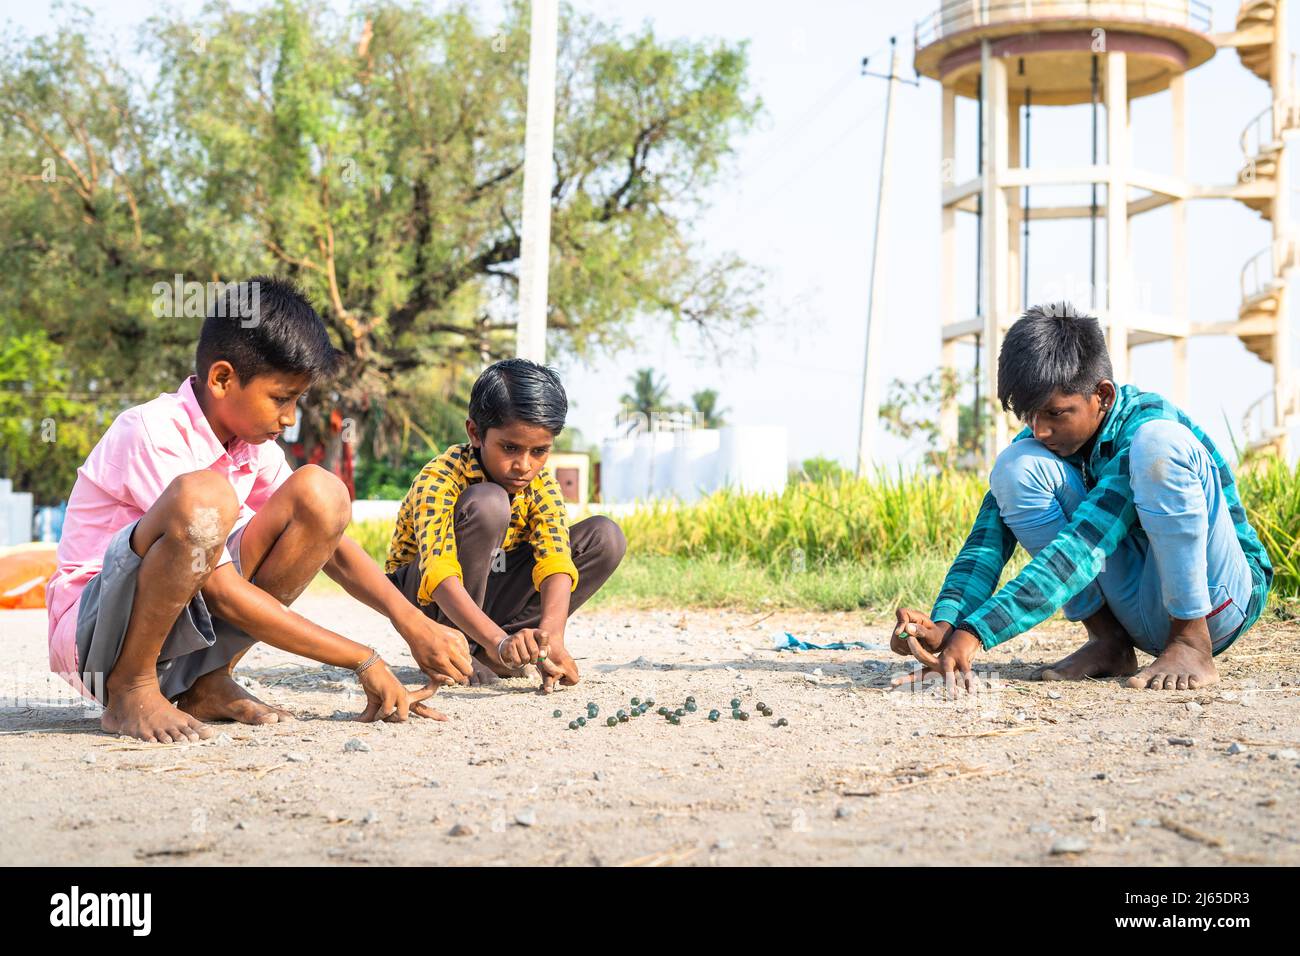 Les enfants du village indien jouant des goli ou des marbres à proximité du paddy Field - concept de jeu traditionnel, vacances d'été et activités de loisirs. Banque D'Images